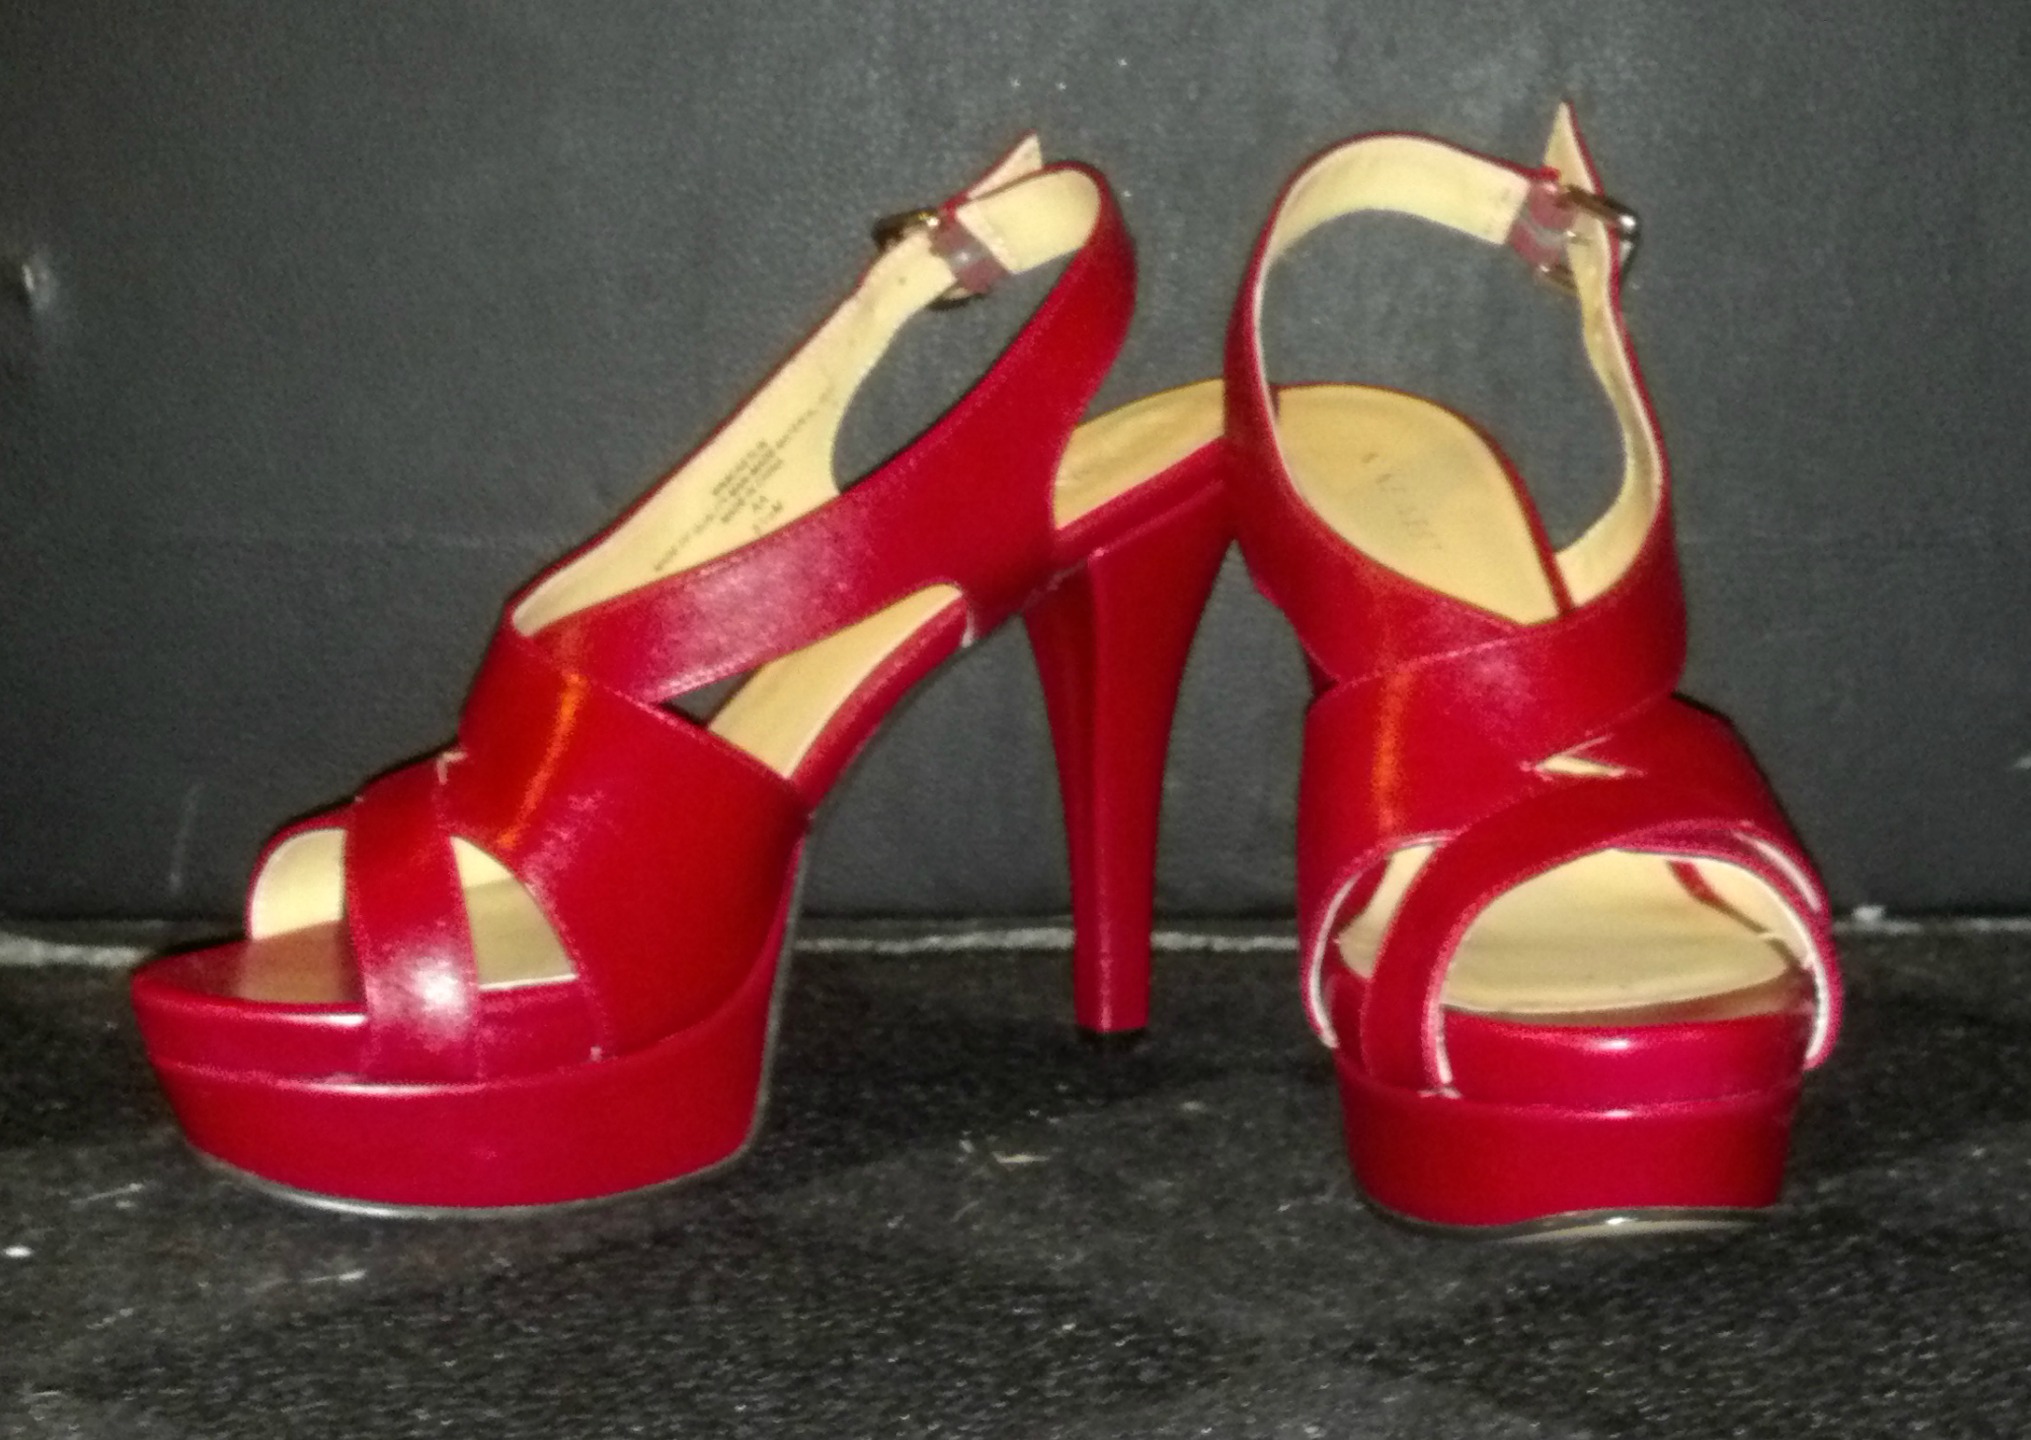 comfortable red heels